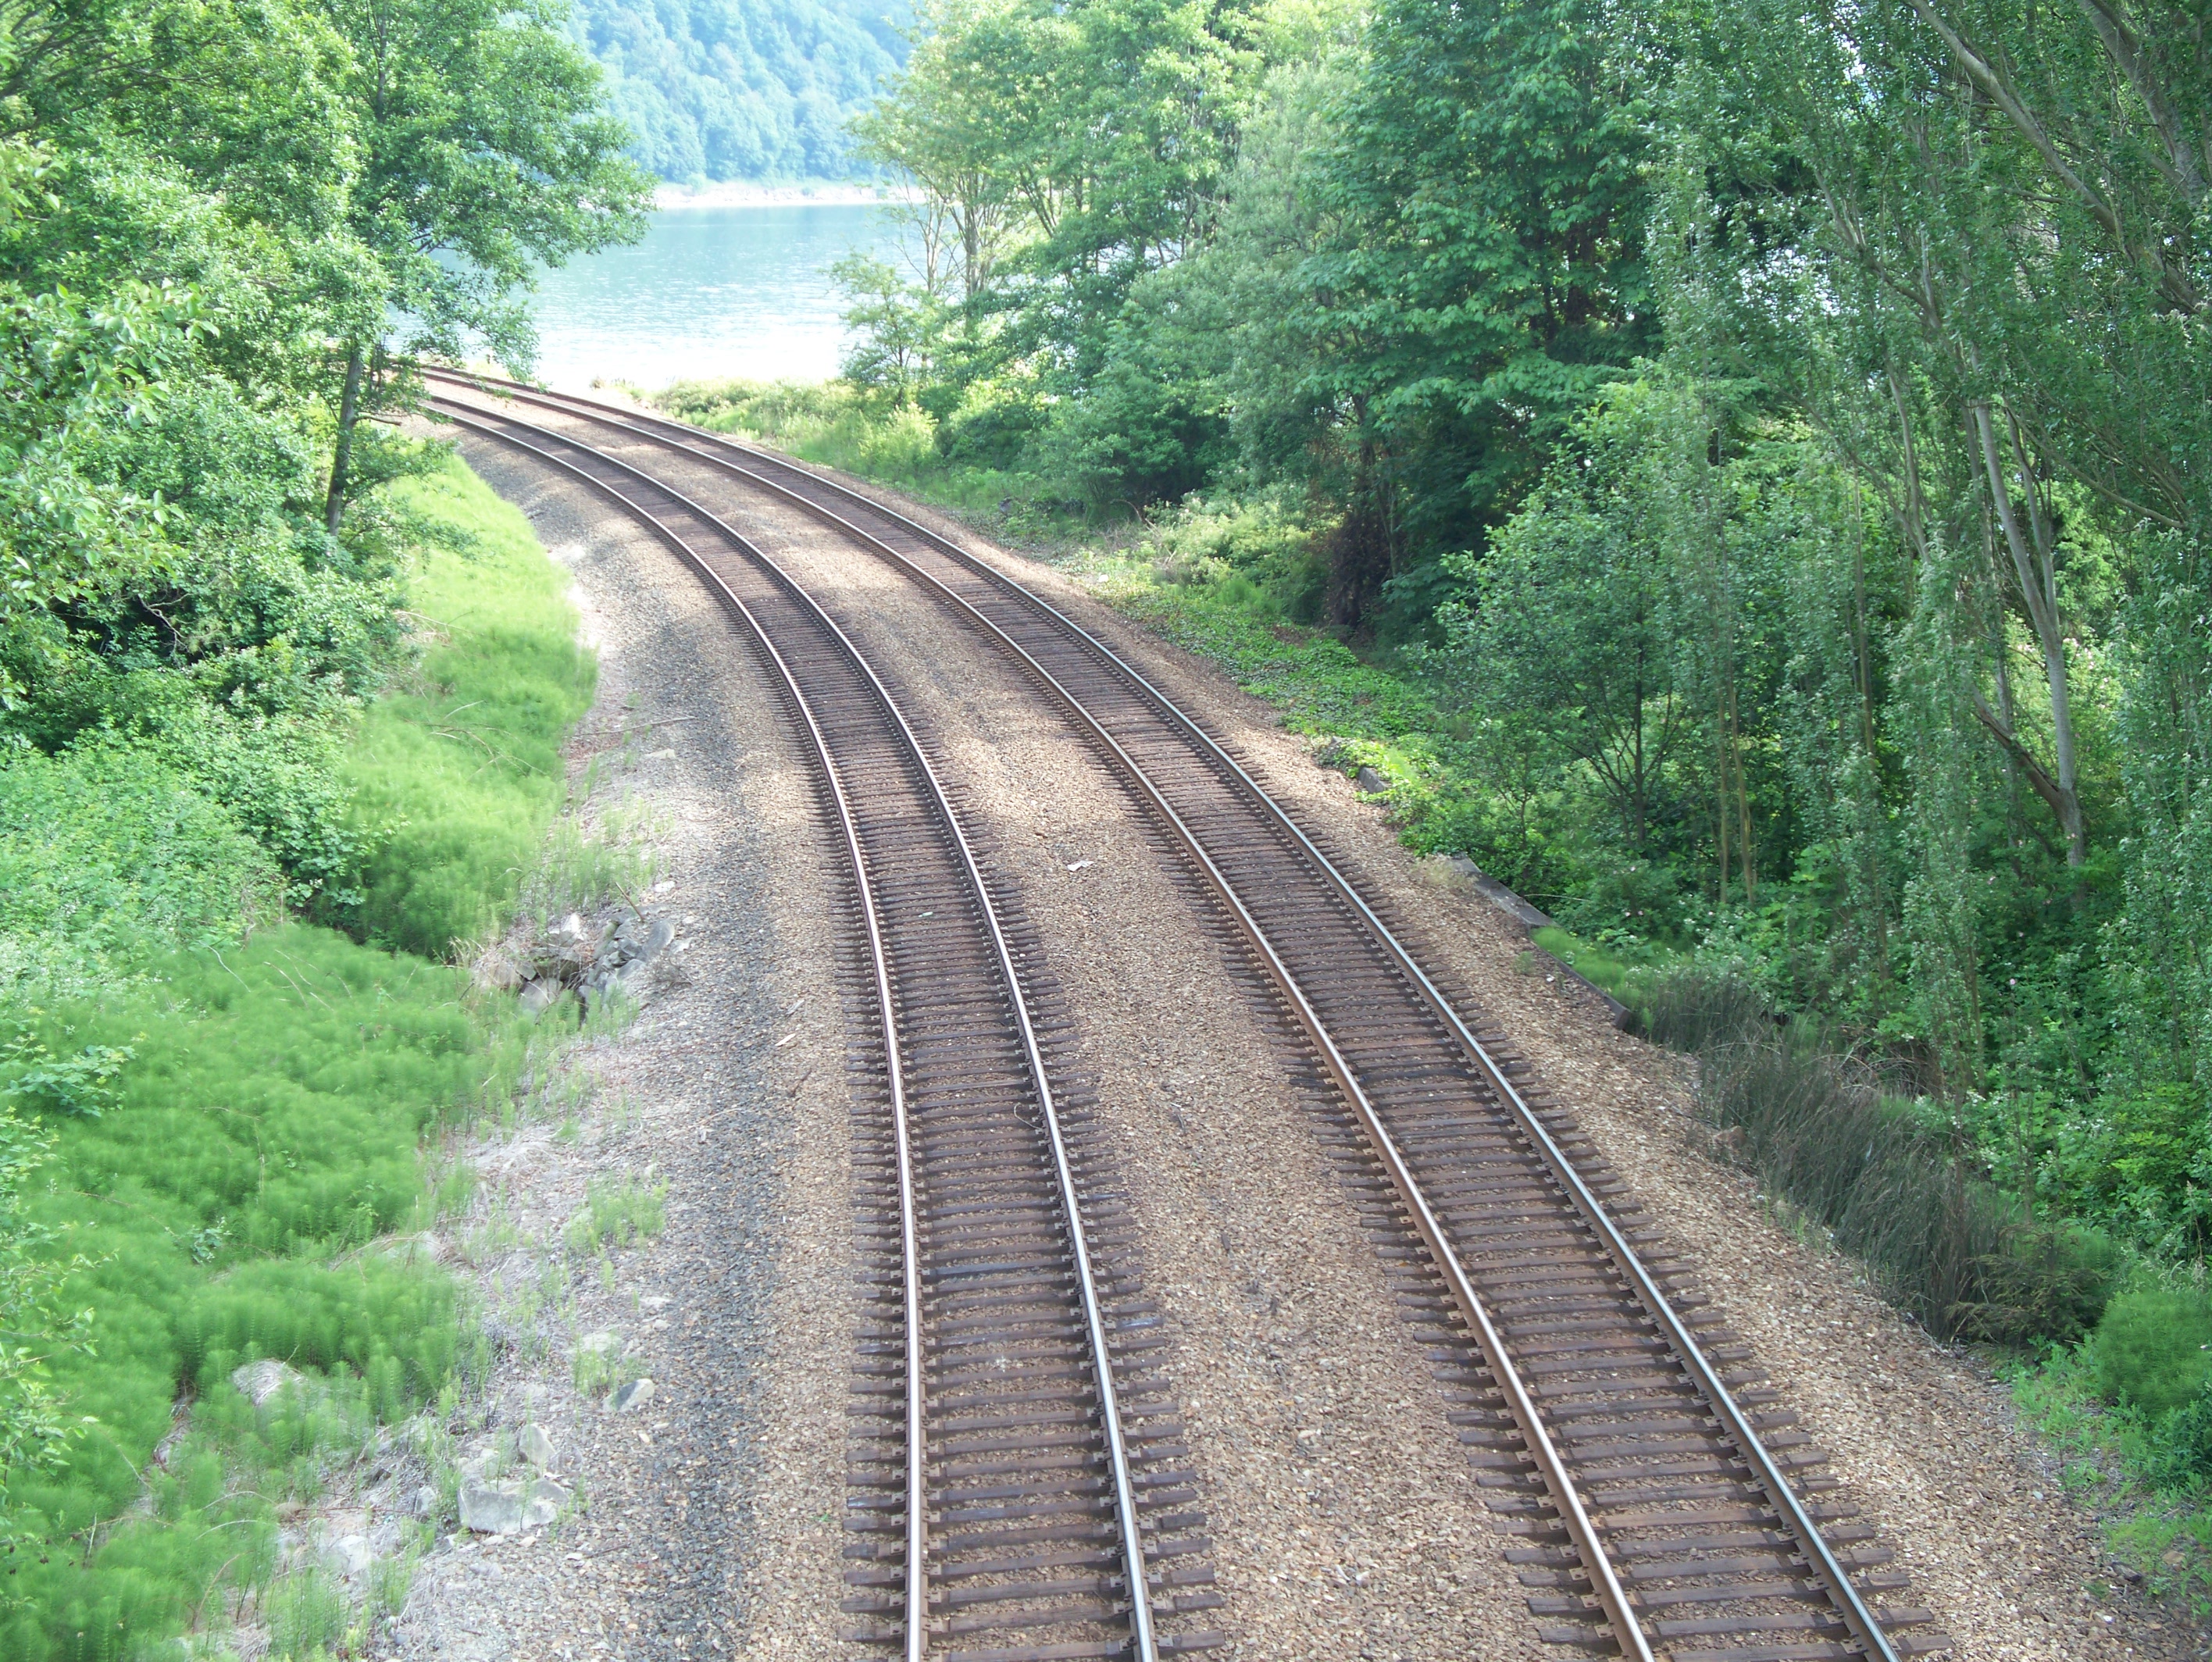 https://en.wikipedia.org/wiki/File:Twin_track_of_train_rails_in_a_wooded_area.JPG#mediaviewer/File:Twin_track_of_train_rails_in_a_wooded_area.JPG